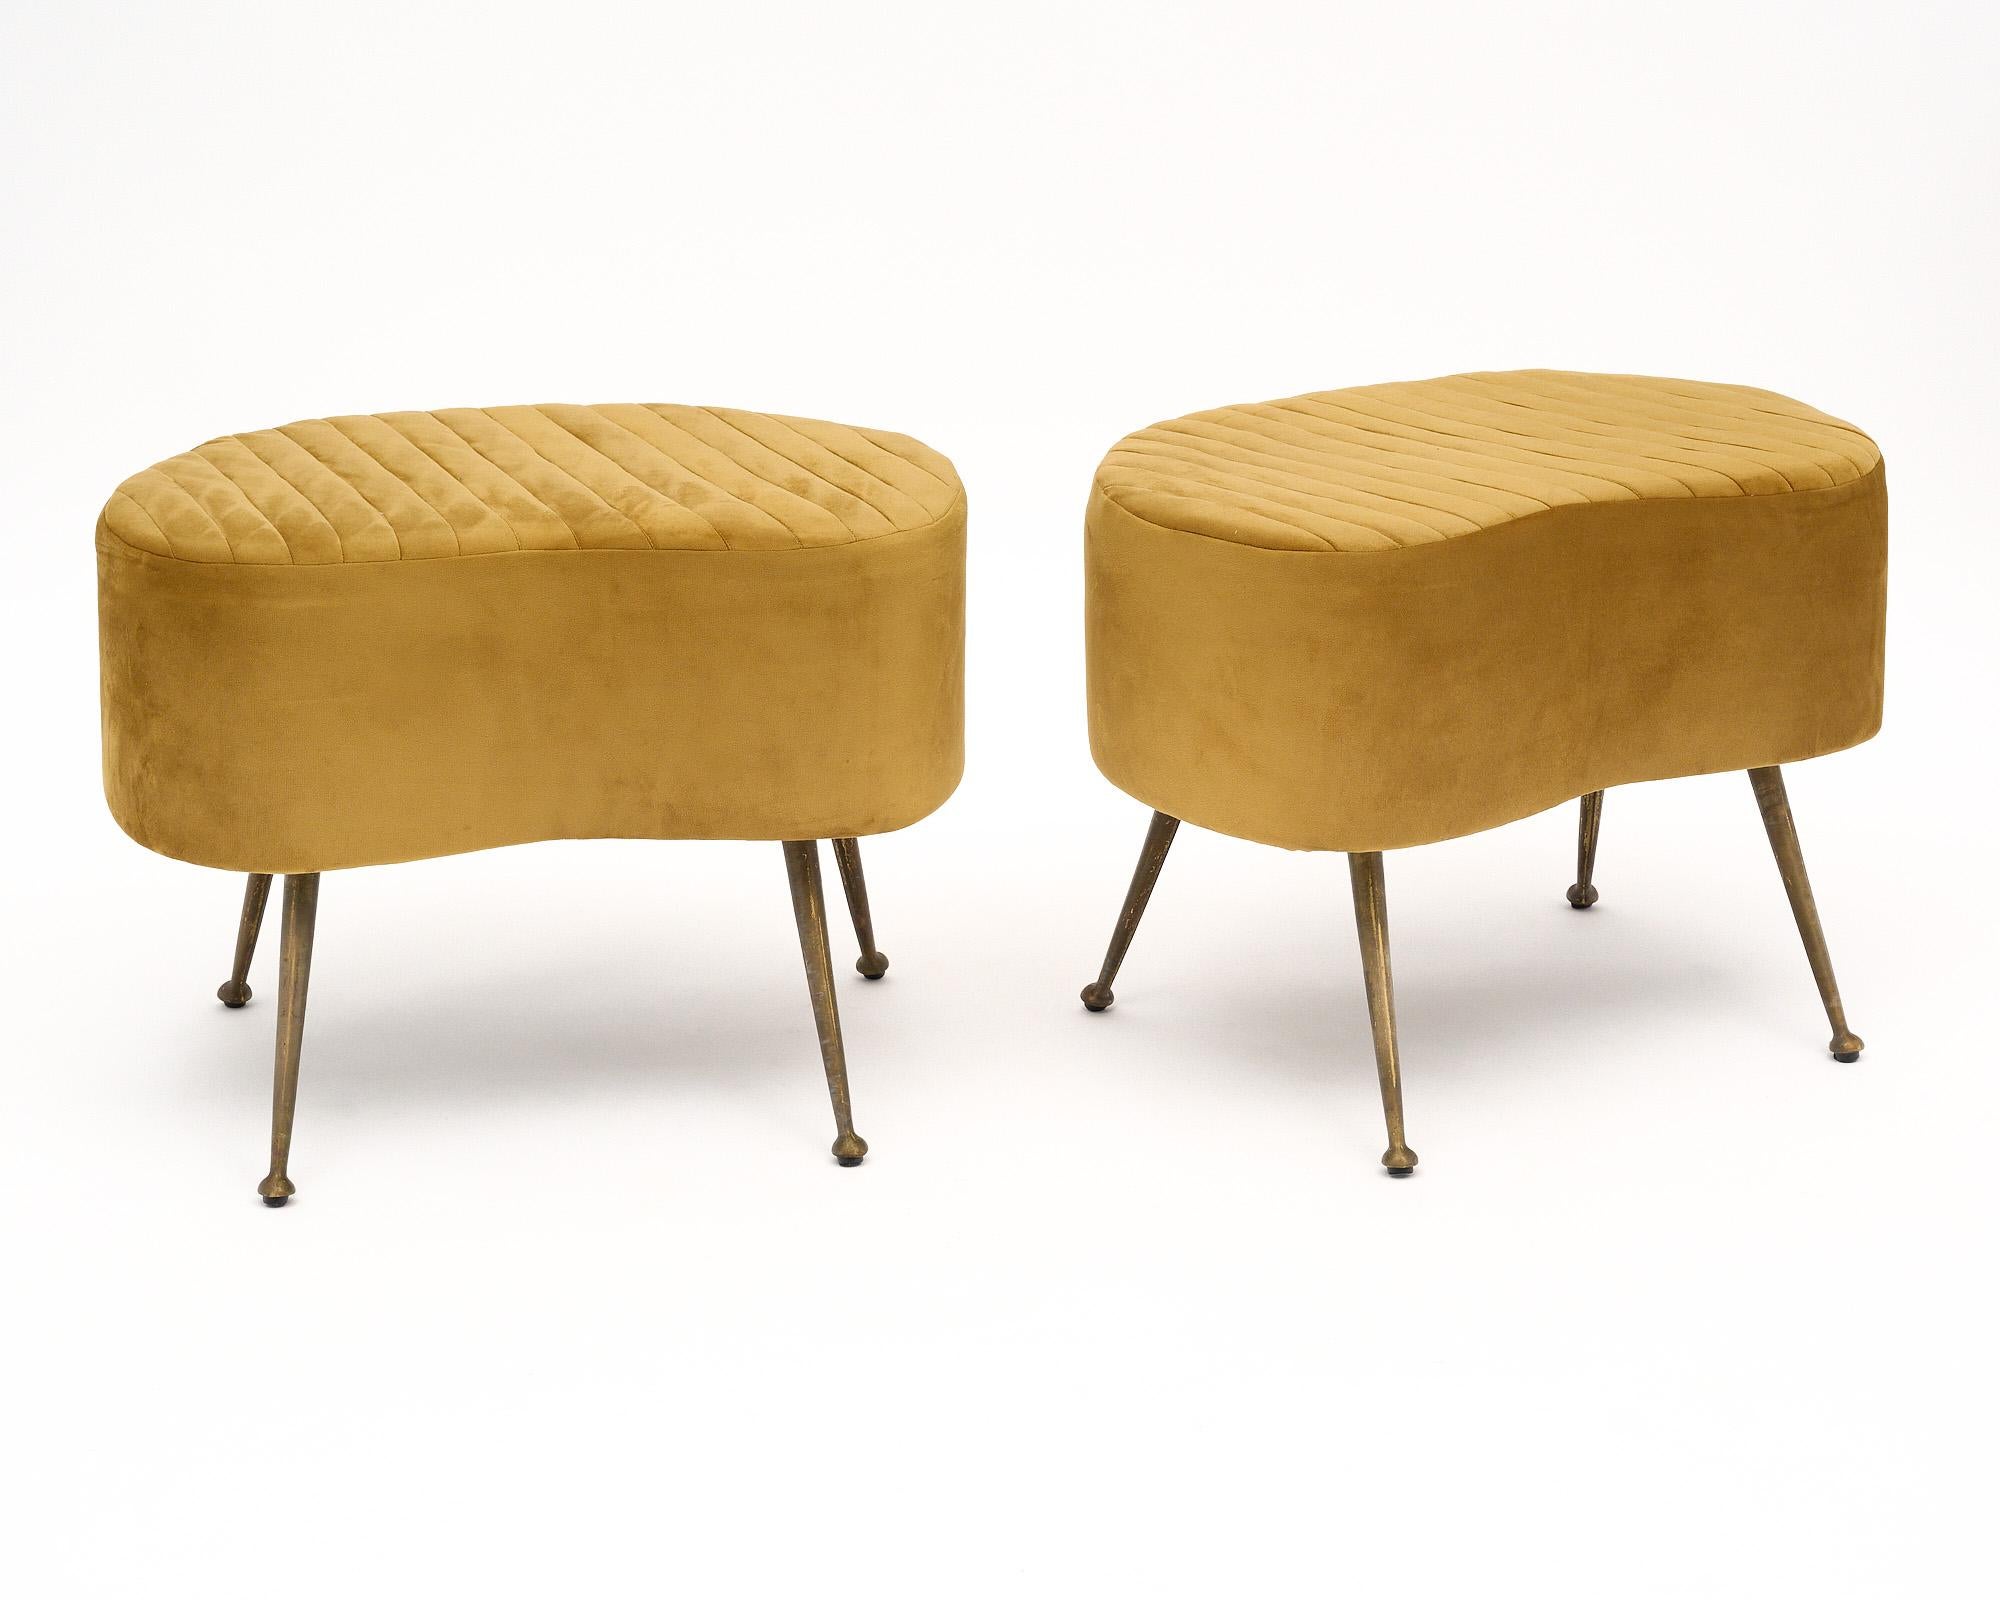 Zwei italienische Vintage-Bänke mit ausgestellten Messingbeinen. Wir lieben die einzigartige und auffallend geschwungene Form der Sitze und die typischen italienischen Details aus der Mitte des Jahrhunderts. Sie wurden neu mit einem goldenen